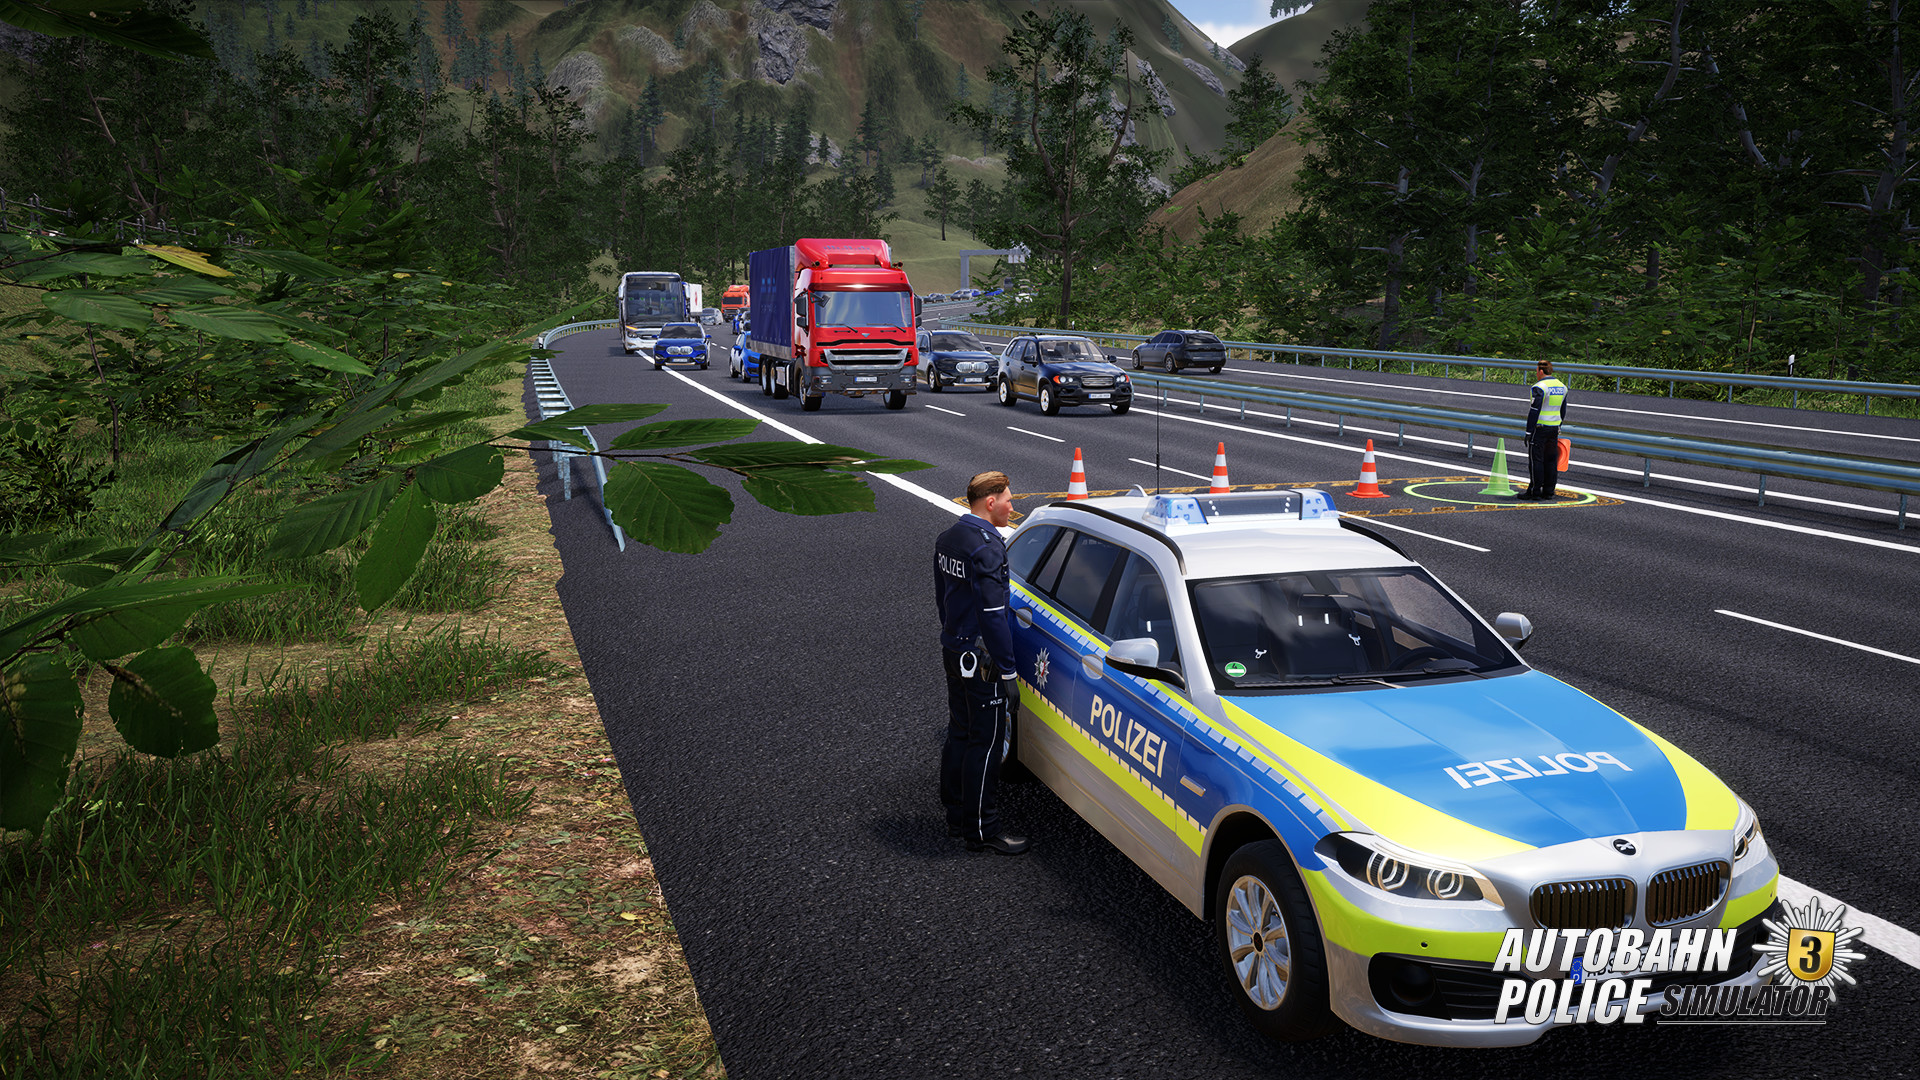 Autobahn Police Simulator 3 Steam on